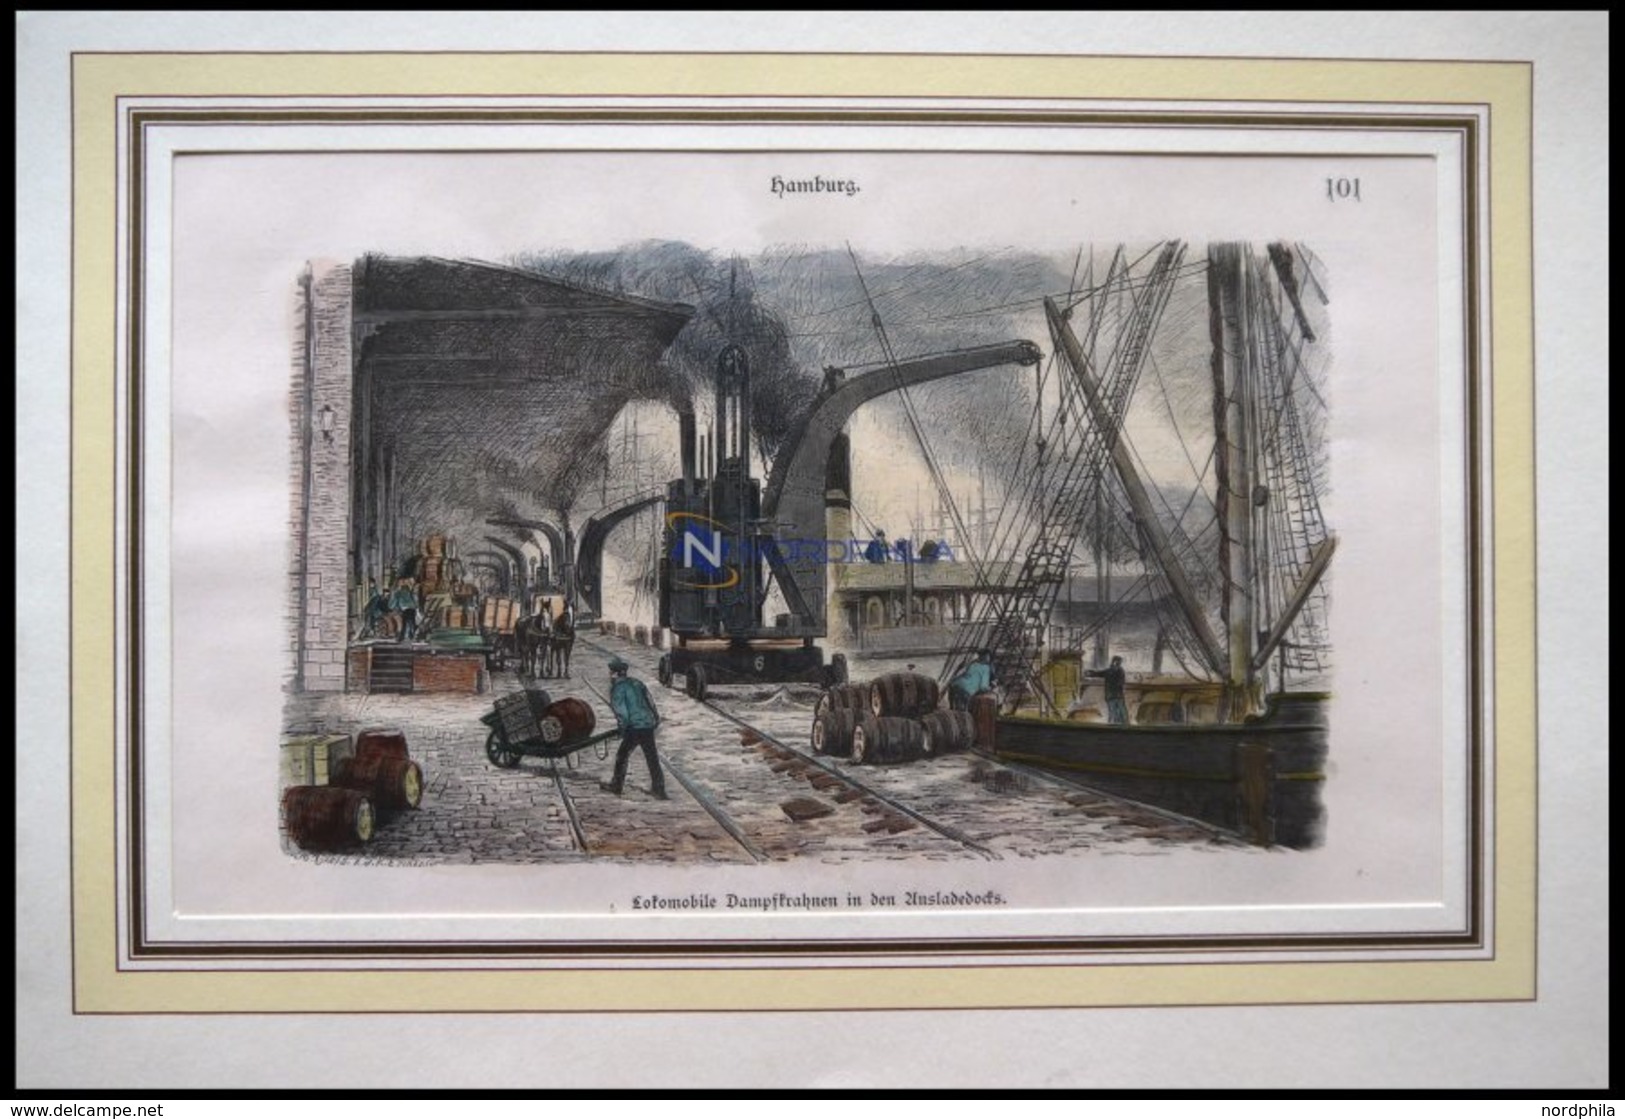 HAMBURG: Lokomobile Dampfkrahnen In Den Ausladedocks, Kolorierter Holzstich Von 1881 - Lithographien